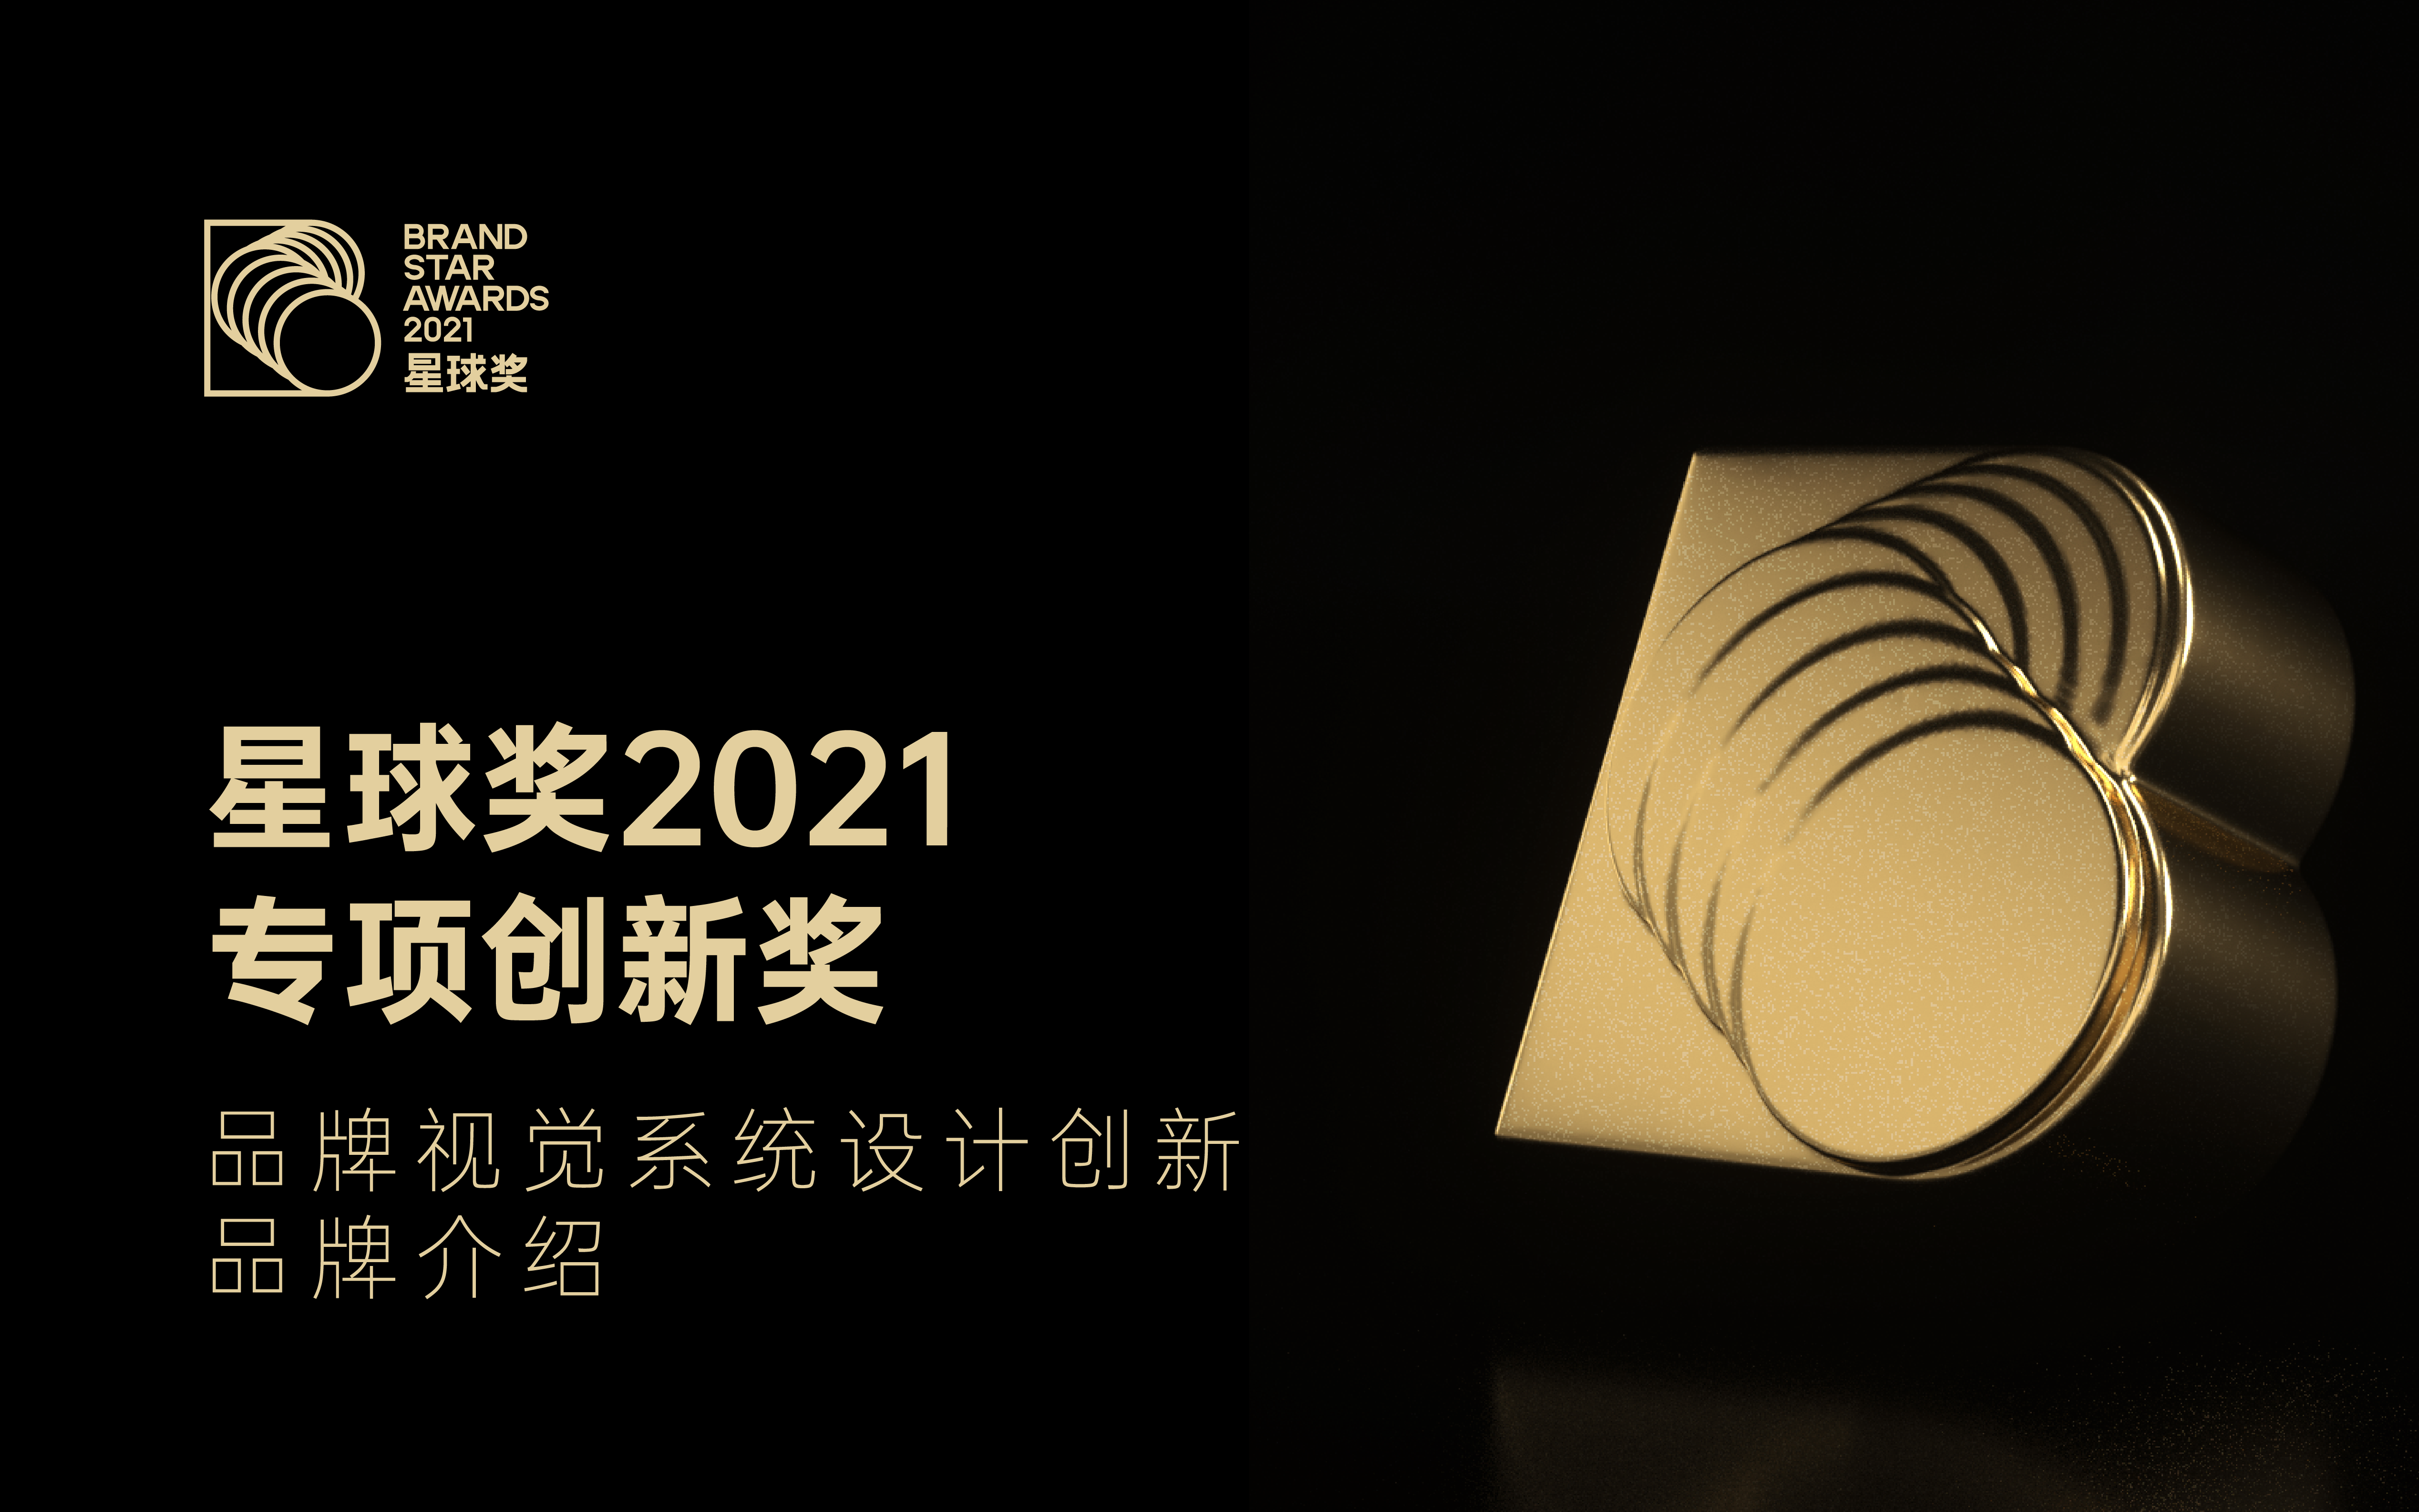 「品牌视觉系统设计创新」获奖品牌介绍｜星球奖2021